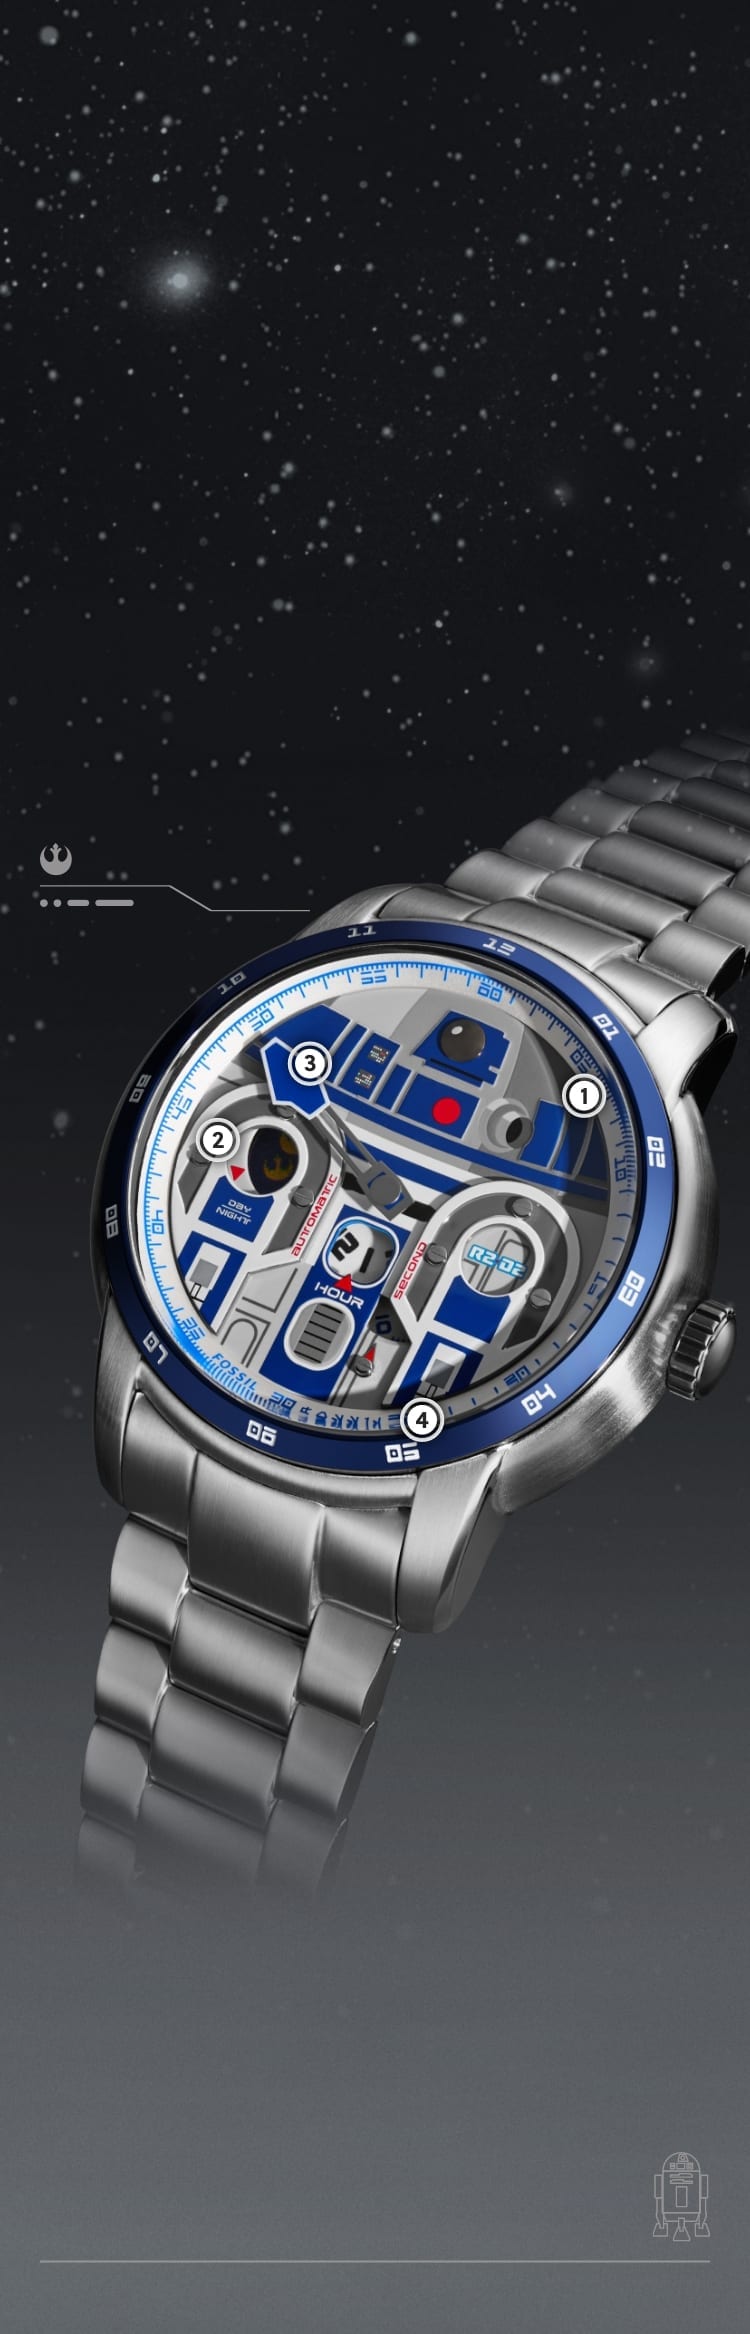 Eine Nahaufnahme einer silberfarbenen Uhr mit einer dreidimensionalen R2-D2-Applikation auf dem Zifferblatt